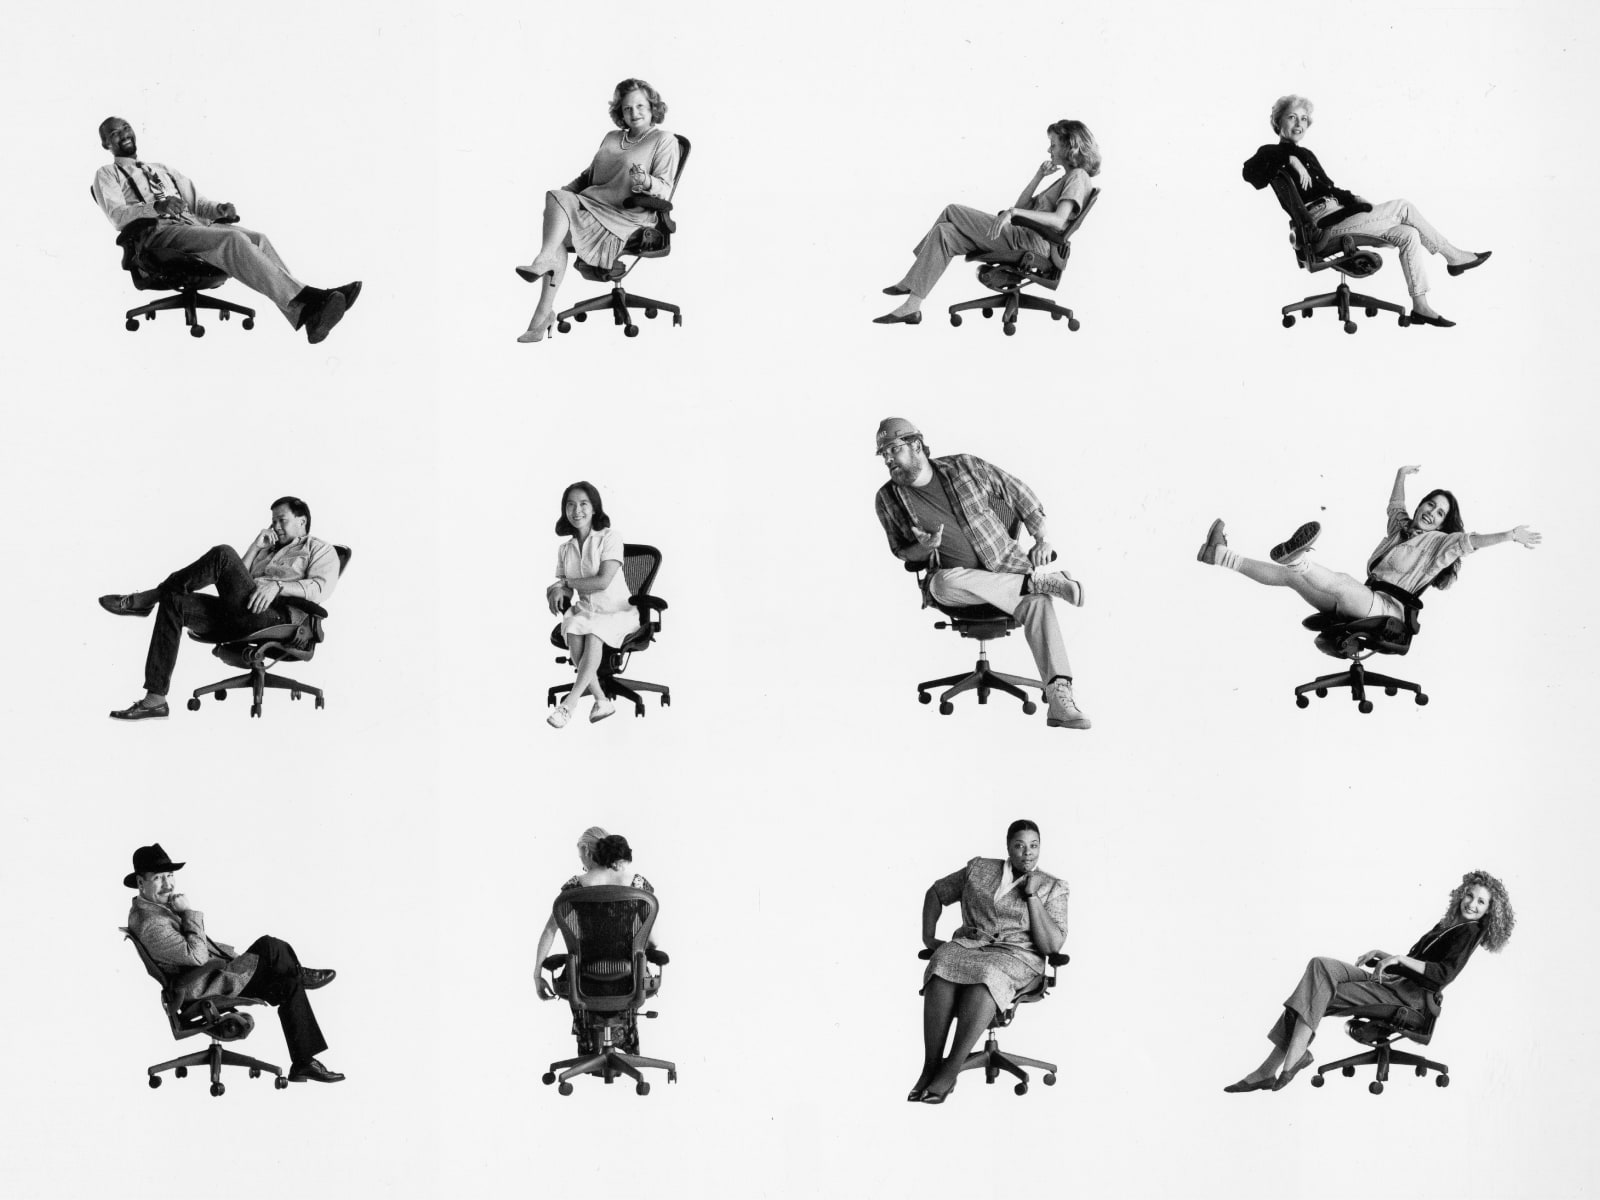 Doce personas distintas sentadas en sillas Aeron individuales.